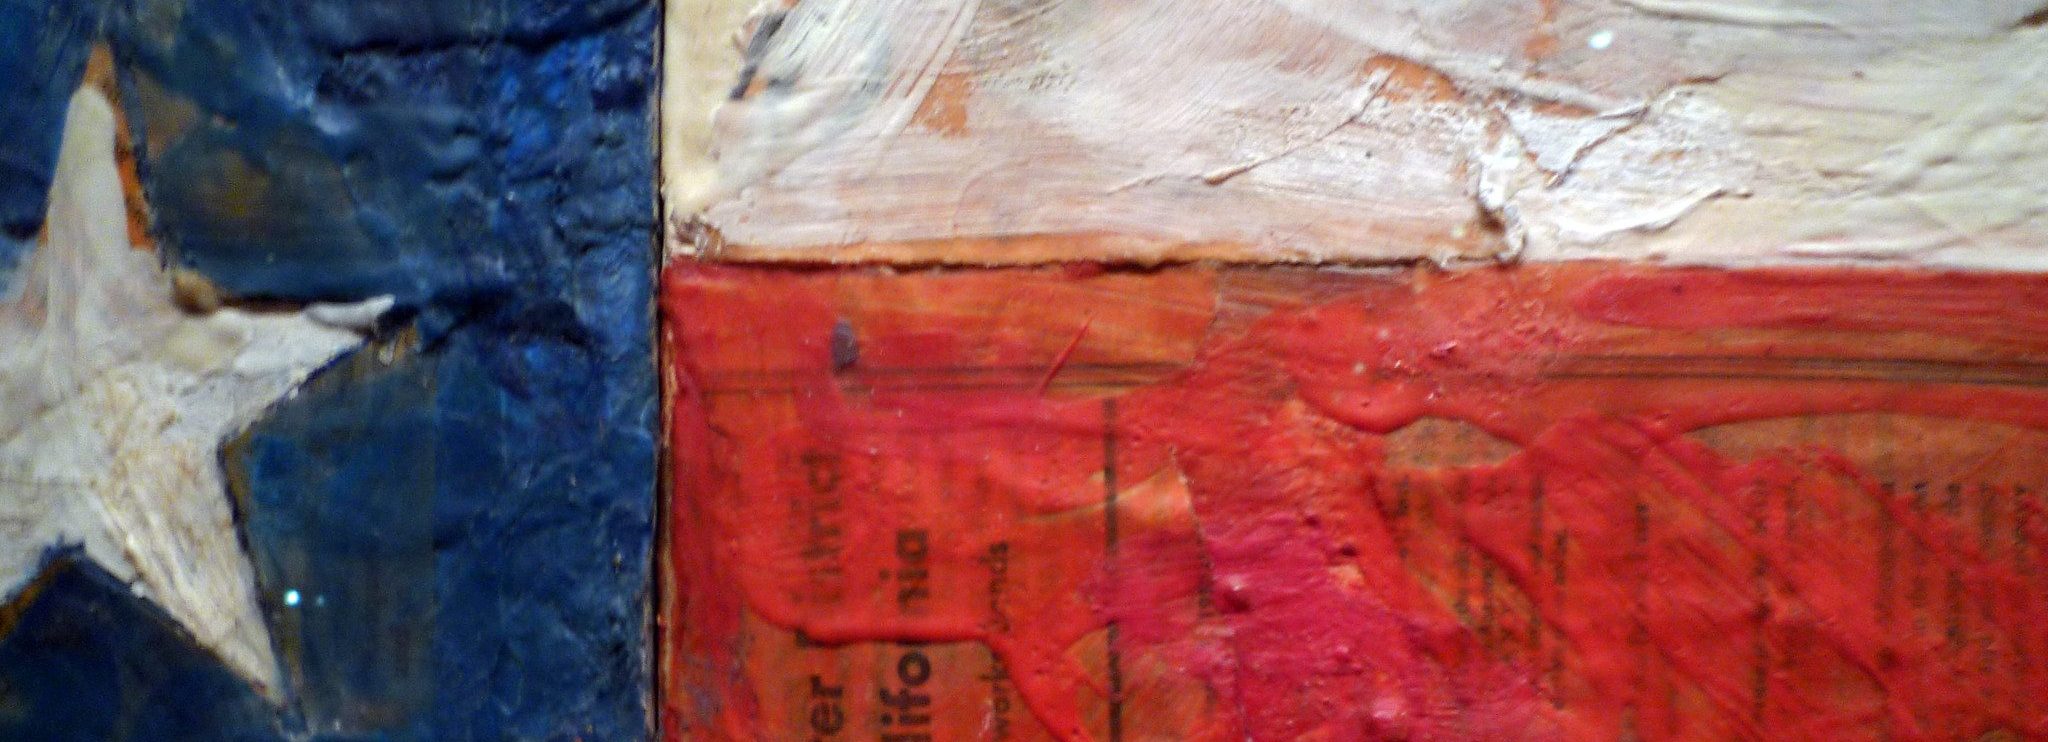 Jasper Johns, Flag (detail)